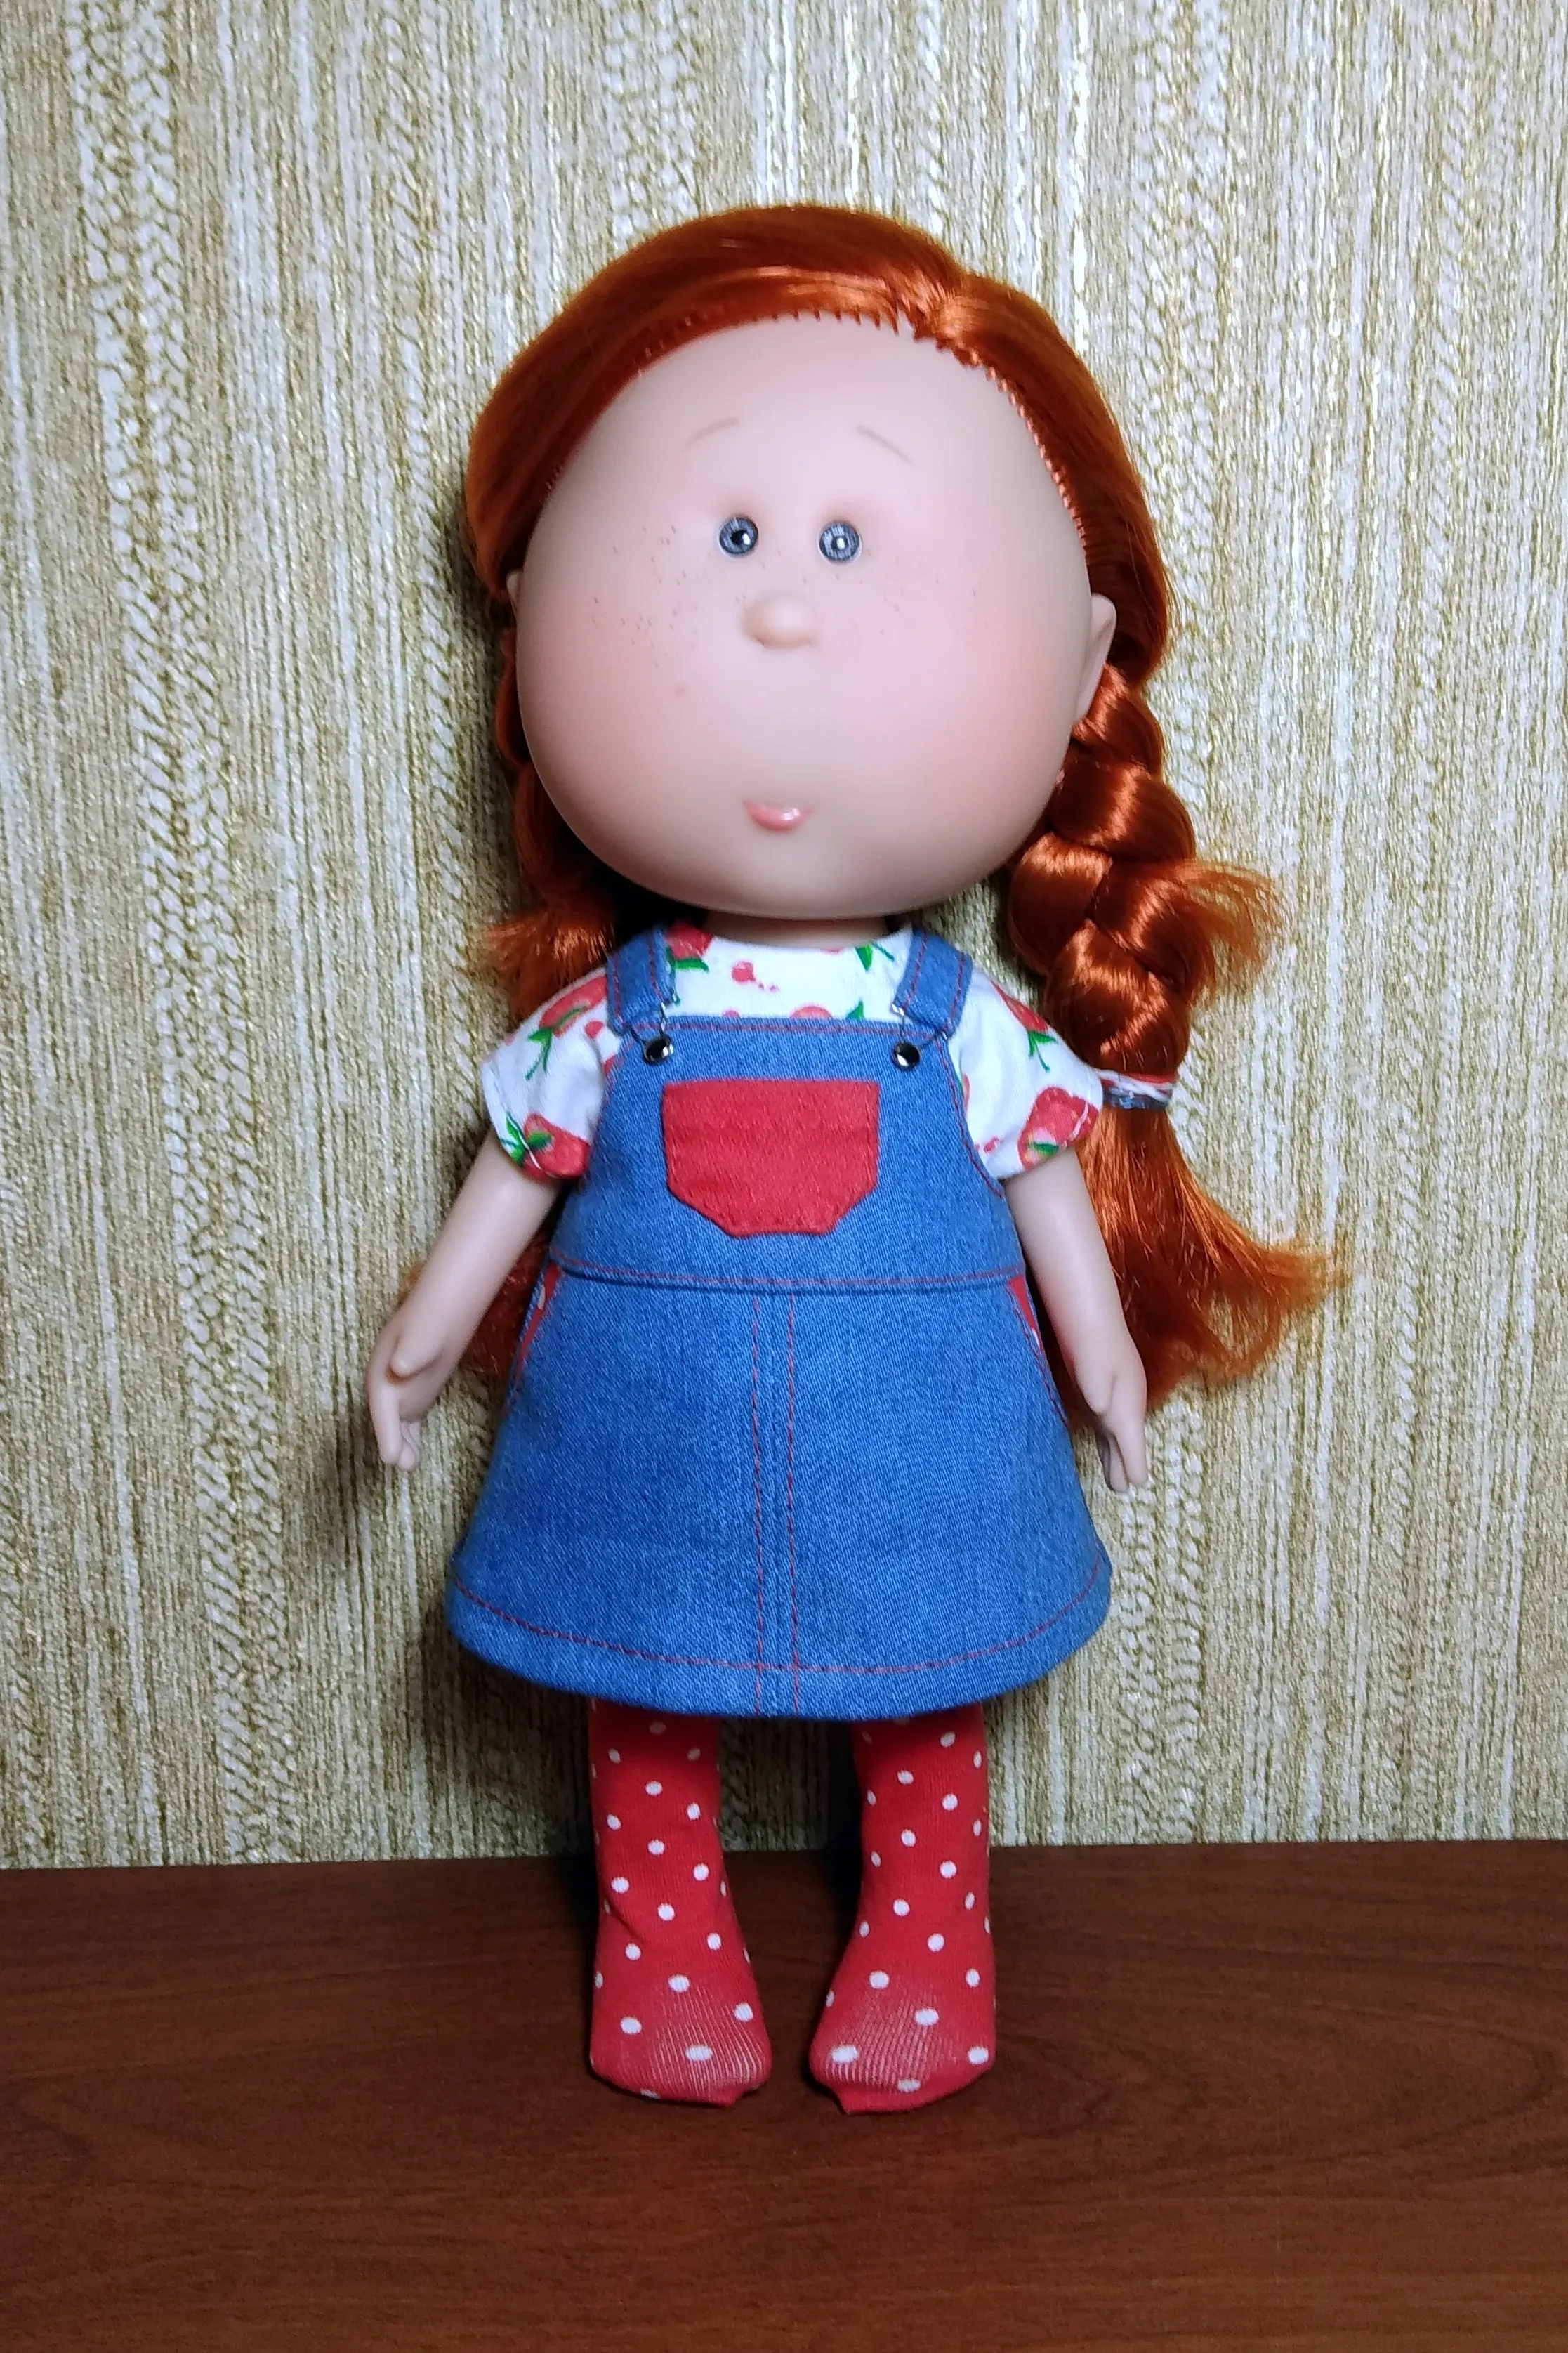 Комплект для кукол Mia Nines Donil ростом 30 см. Джинсовый сарафан+футболка+чулки+трусики.